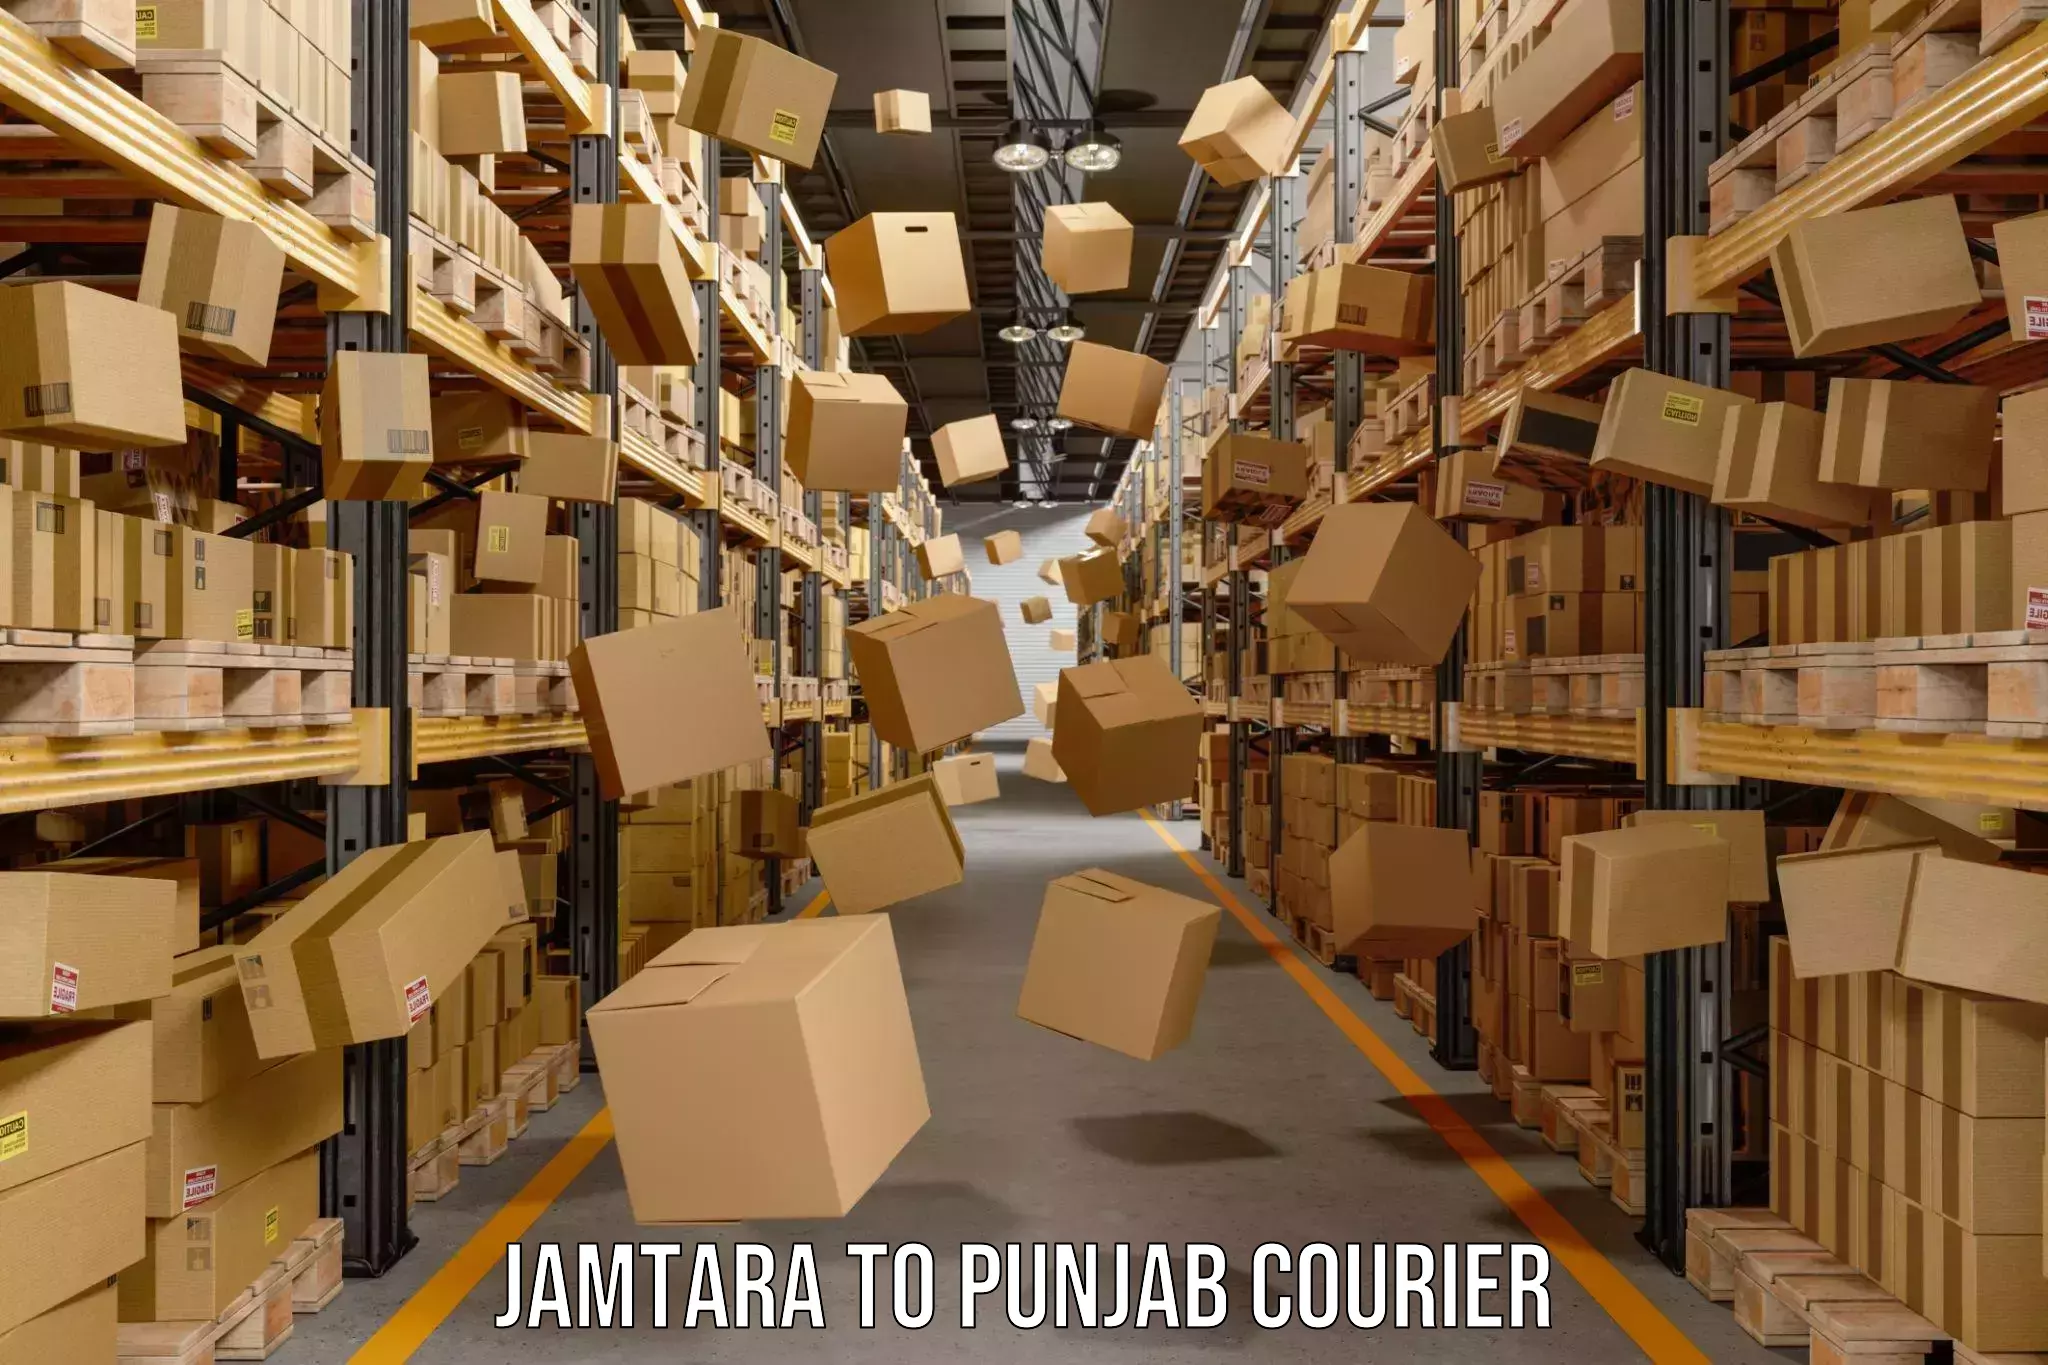 Express shipping Jamtara to Punjab